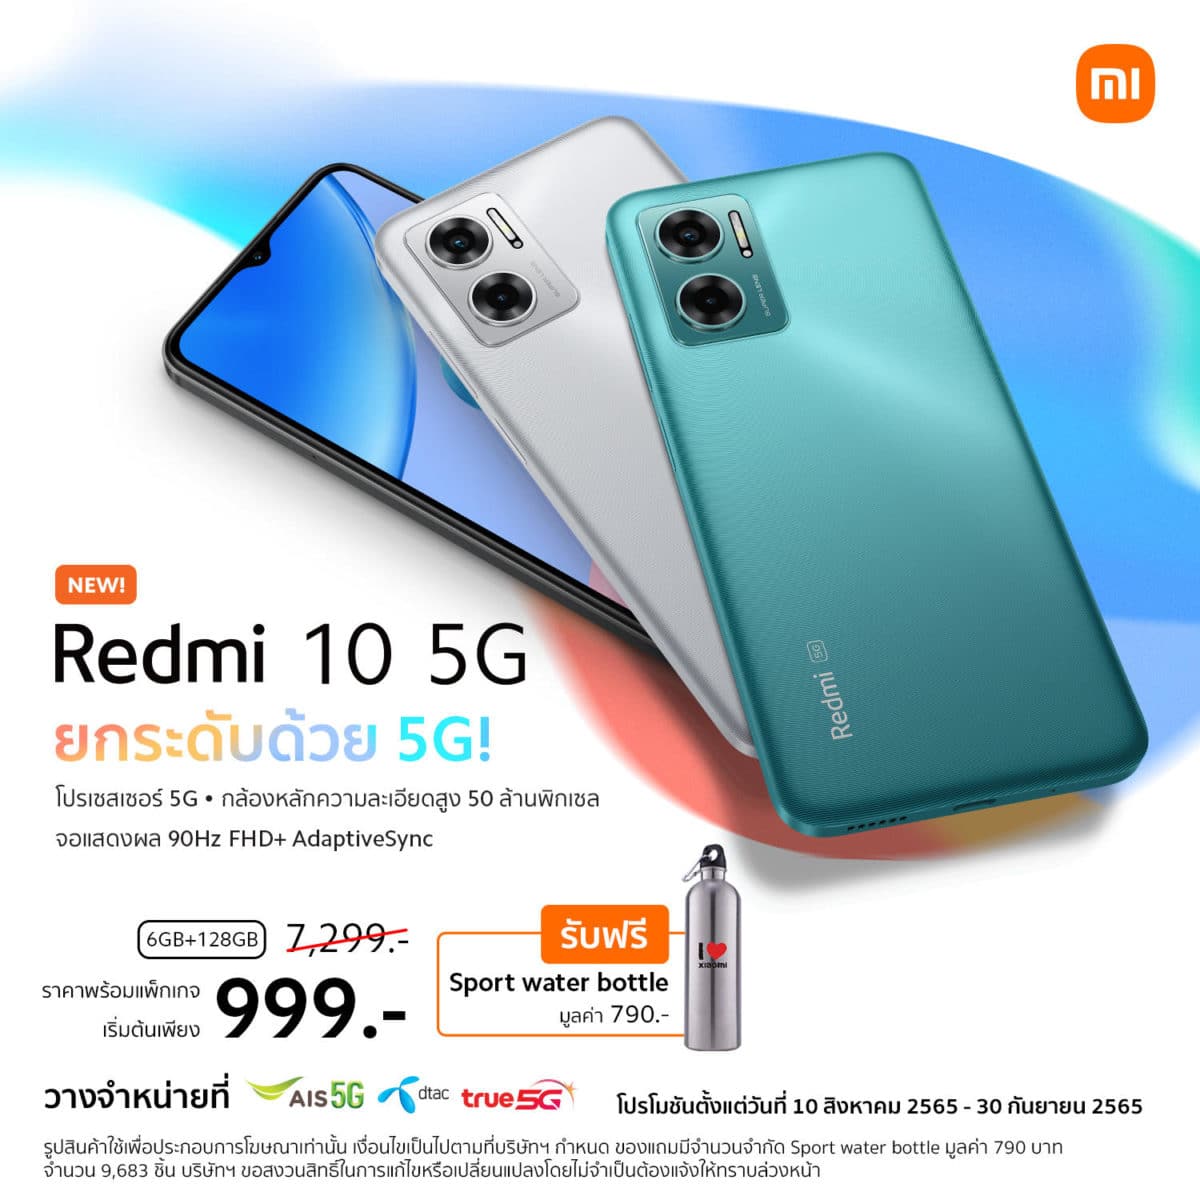 Redmi 10 5G รุ่นความจุ 6GB+128GB วางจำหน่ายใน ราคา 7,299 บาท